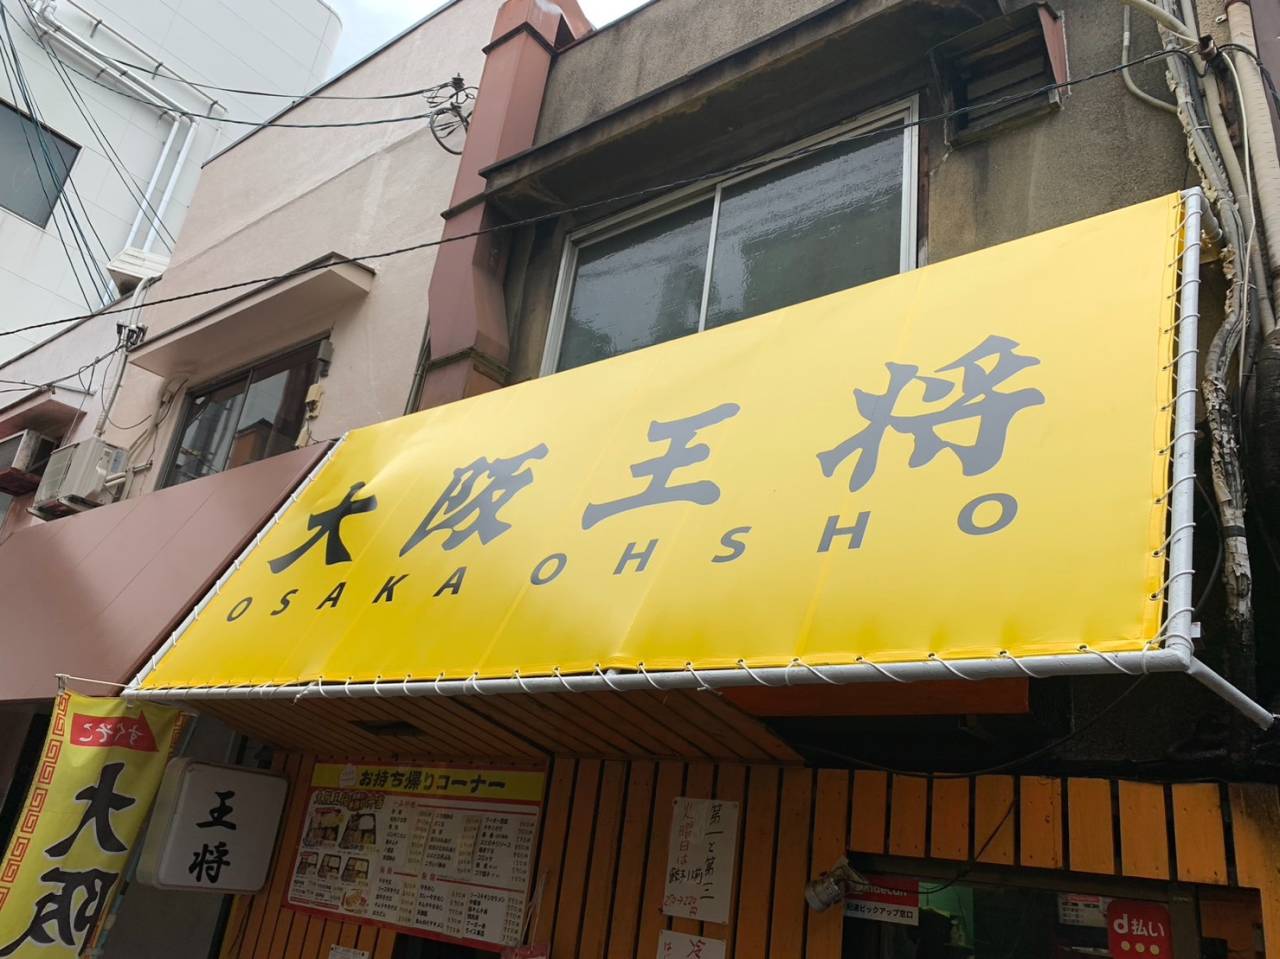 大阪市内飲食店様の既存テントの張替工事を致しました。 【大阪・株式会社 創基】